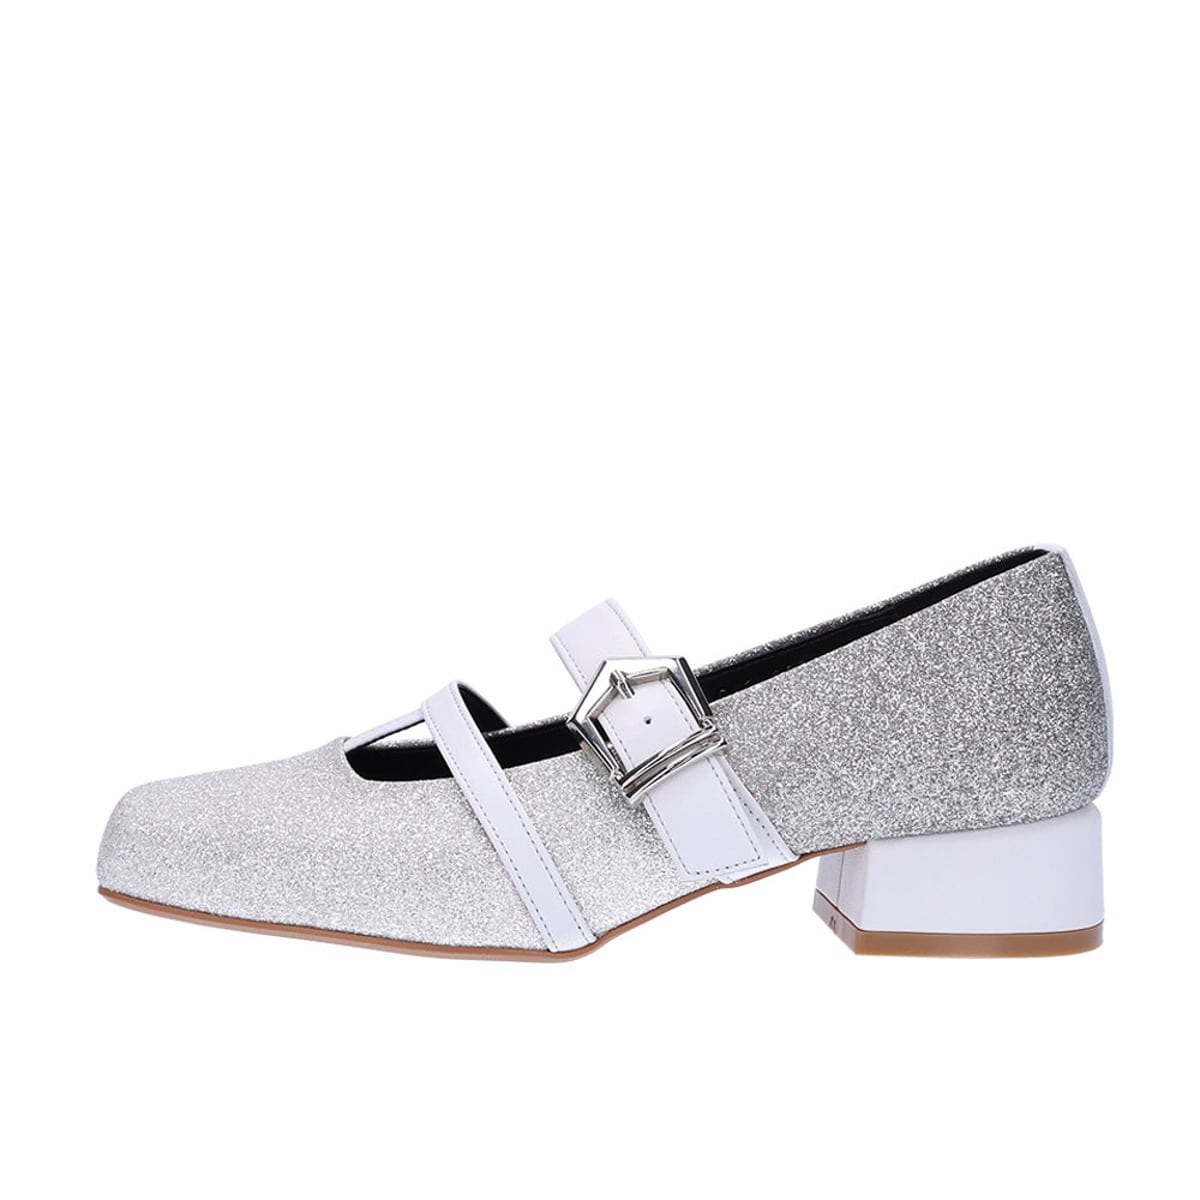 AKU maryjane loafers (silver) Size: 260